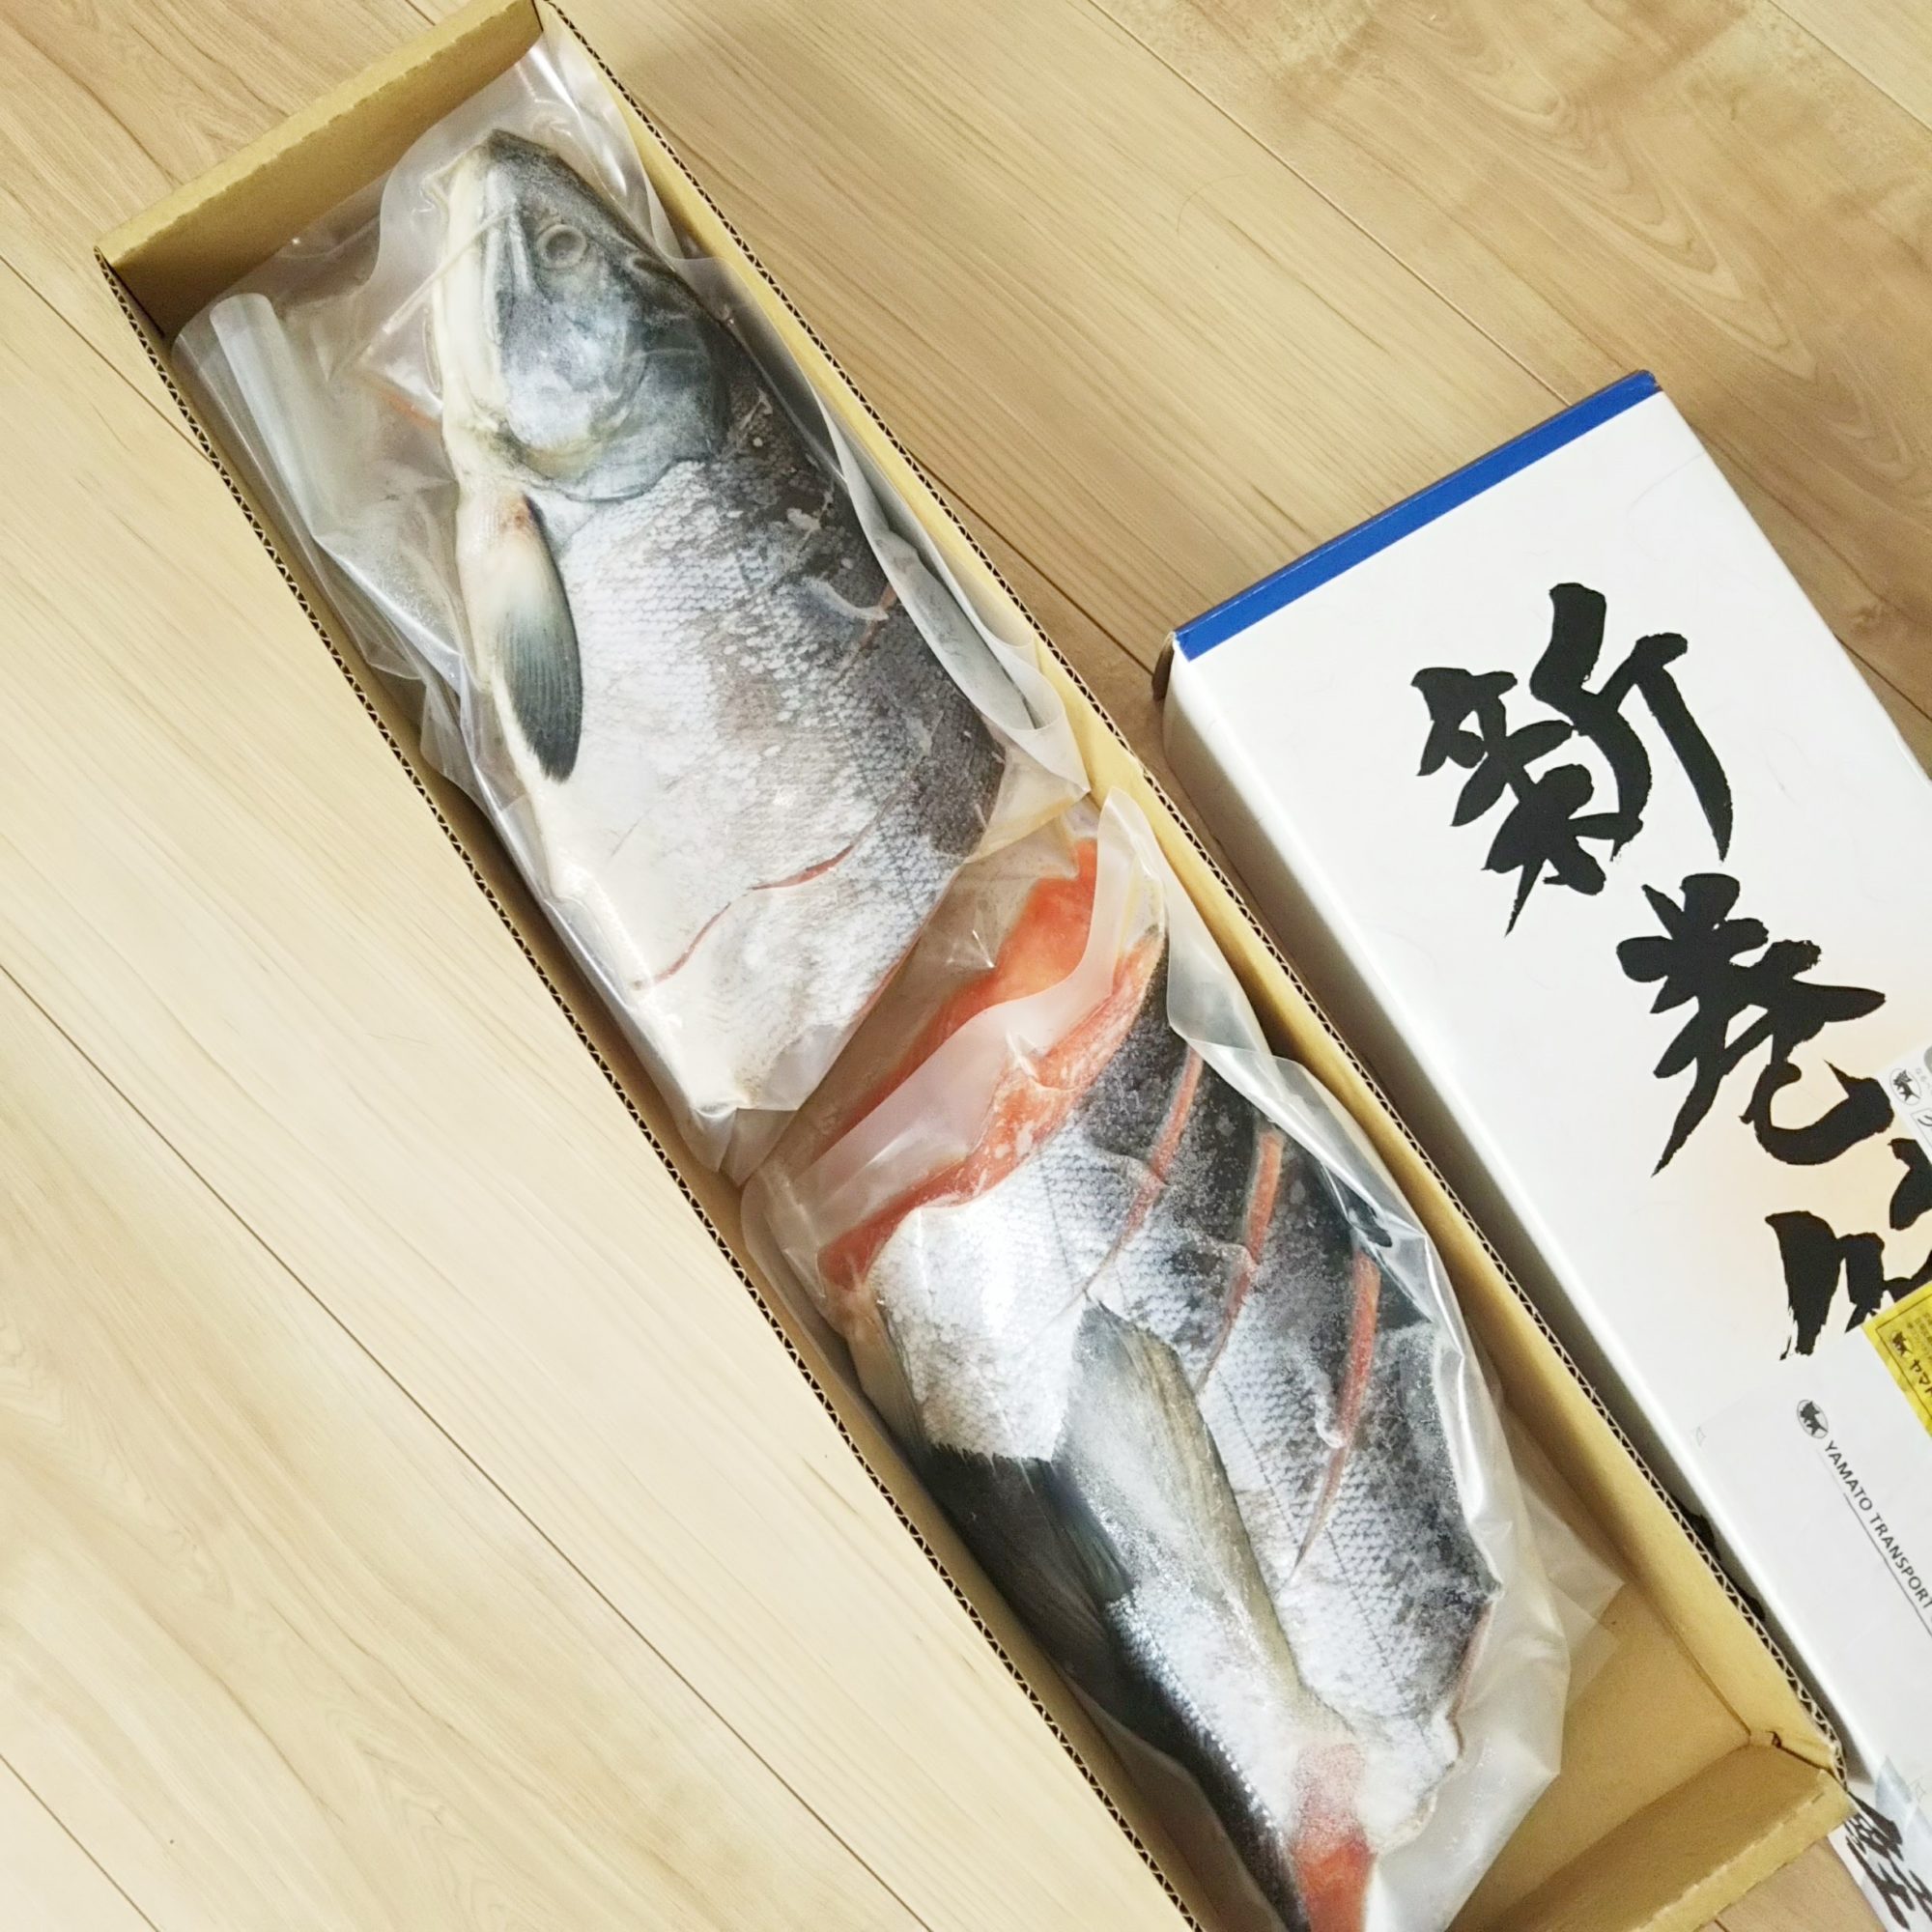 【ふるさと納税】北海道白糠町の「新巻鮭」が届きました | 片付けブログ「まいCleanLife」暮らしのいろいろ